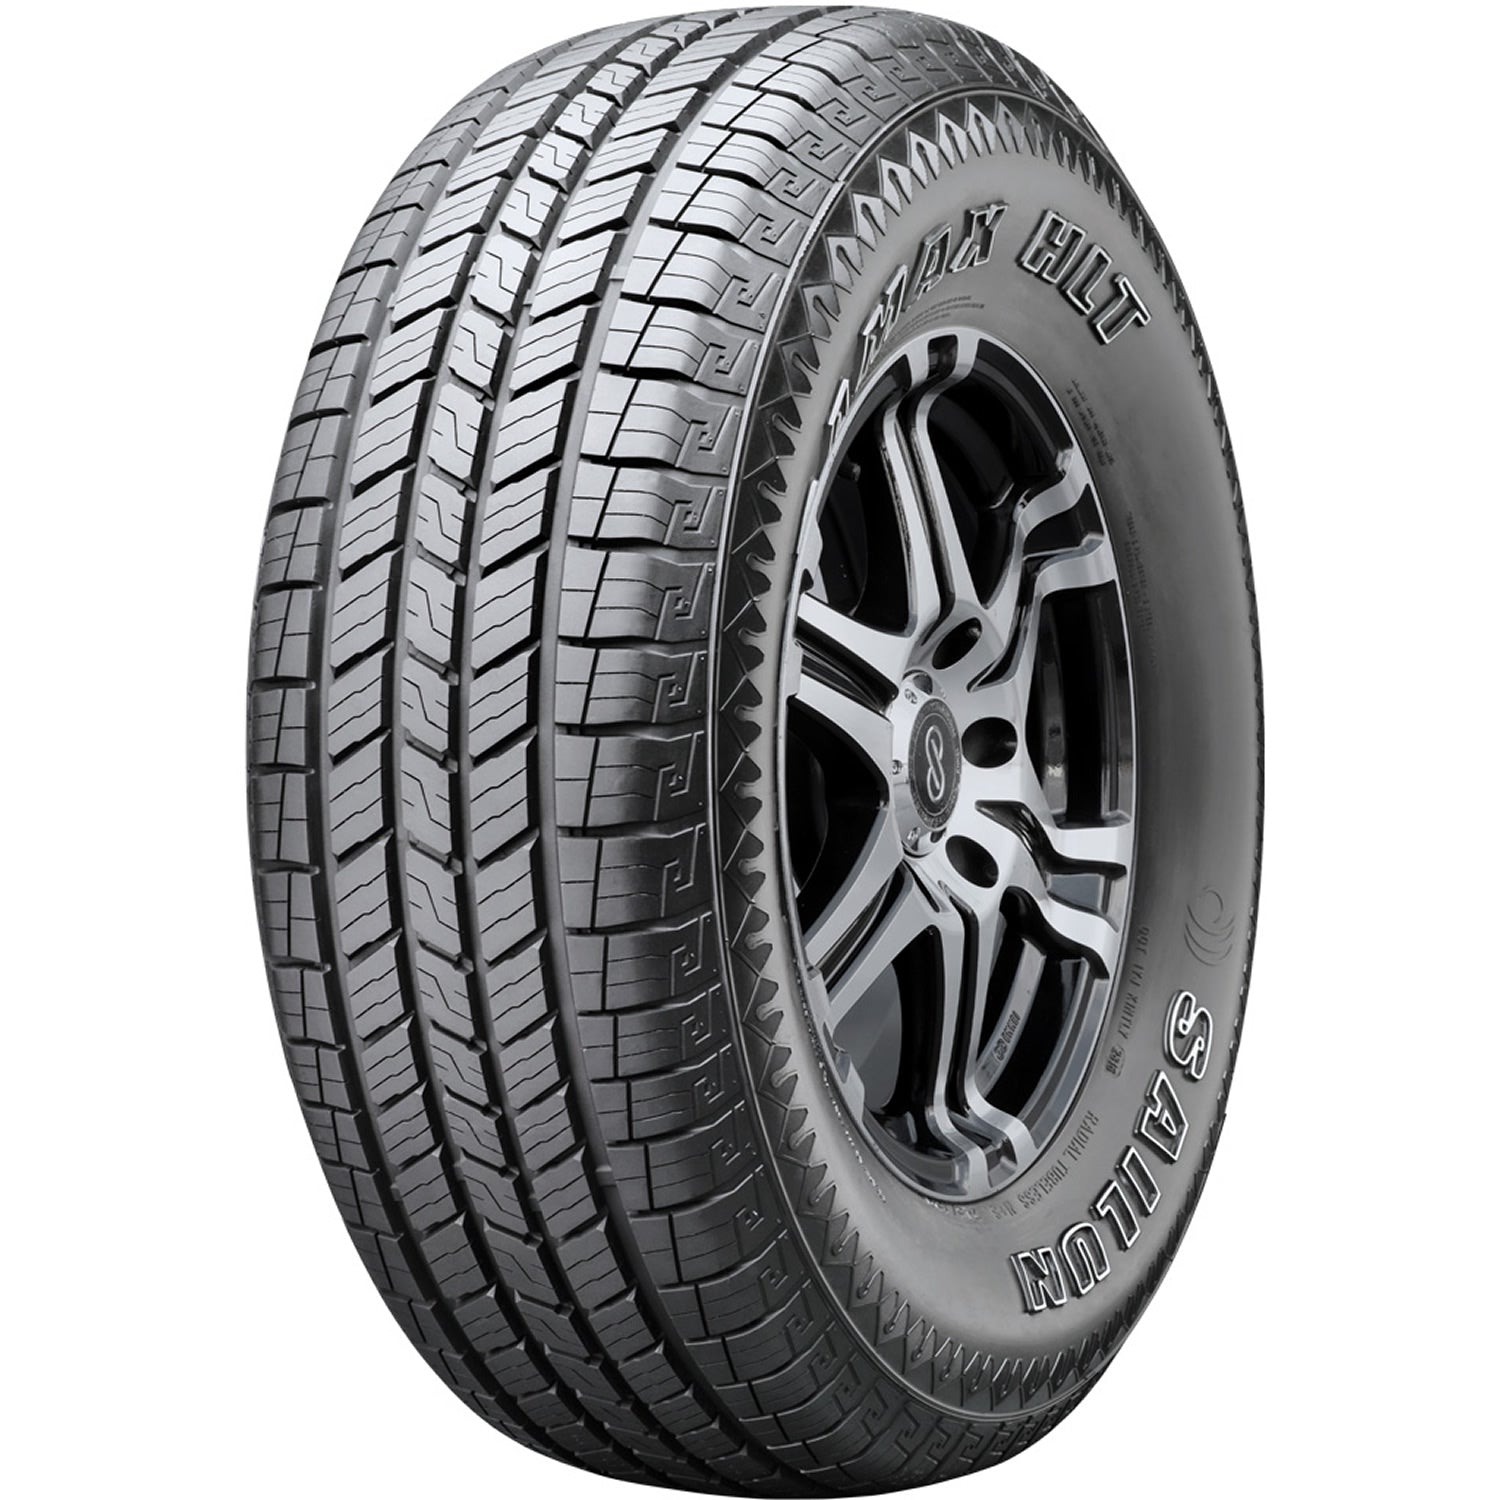 SAILUN TERRAMAX HLT 265/70R17 (31.7X10.7R 17) Tires